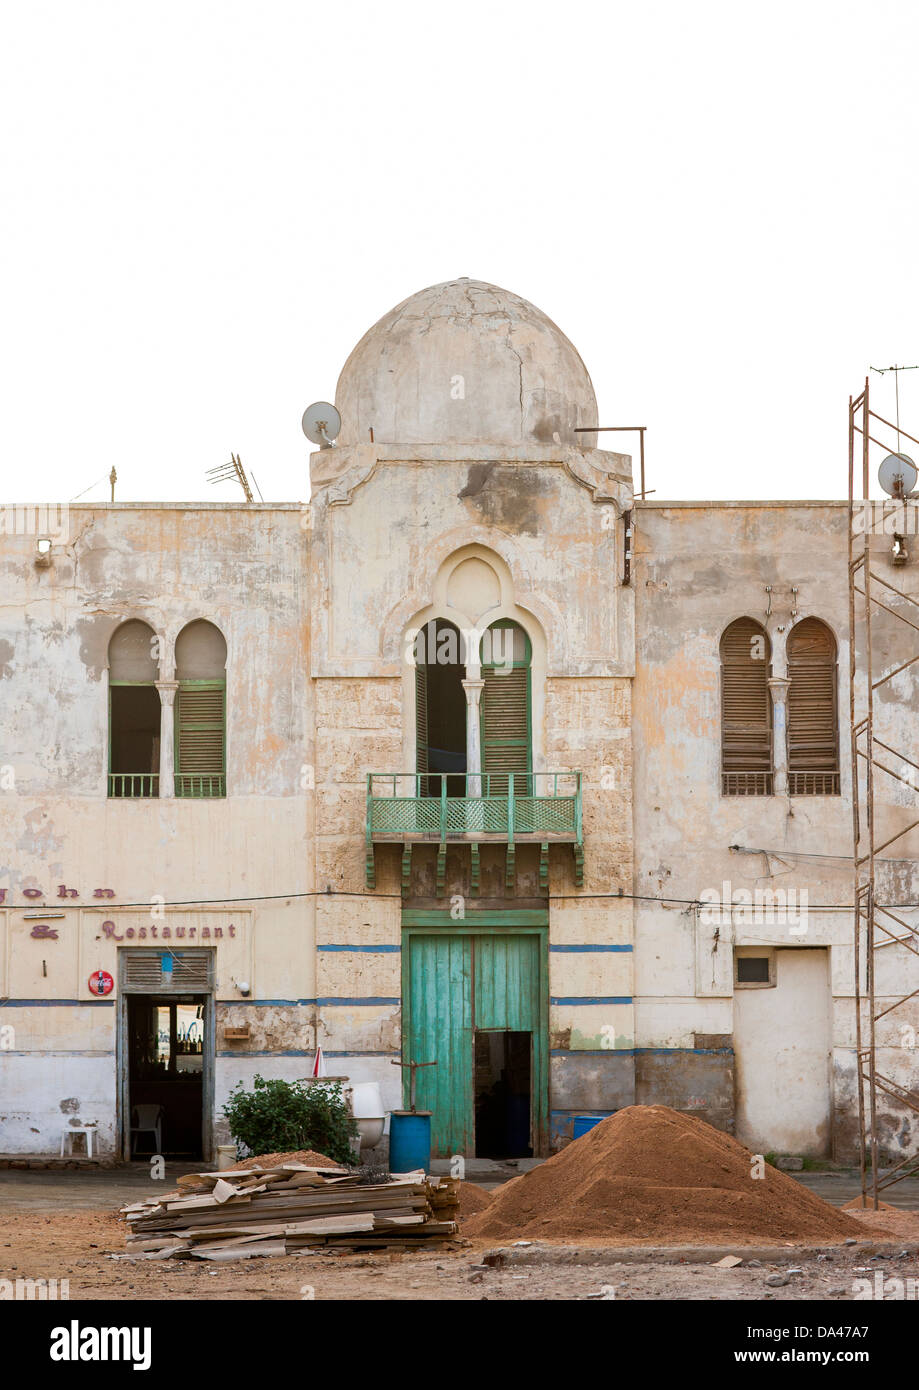 La arquitectura otomana, Massawa, Eritrea Foto de stock